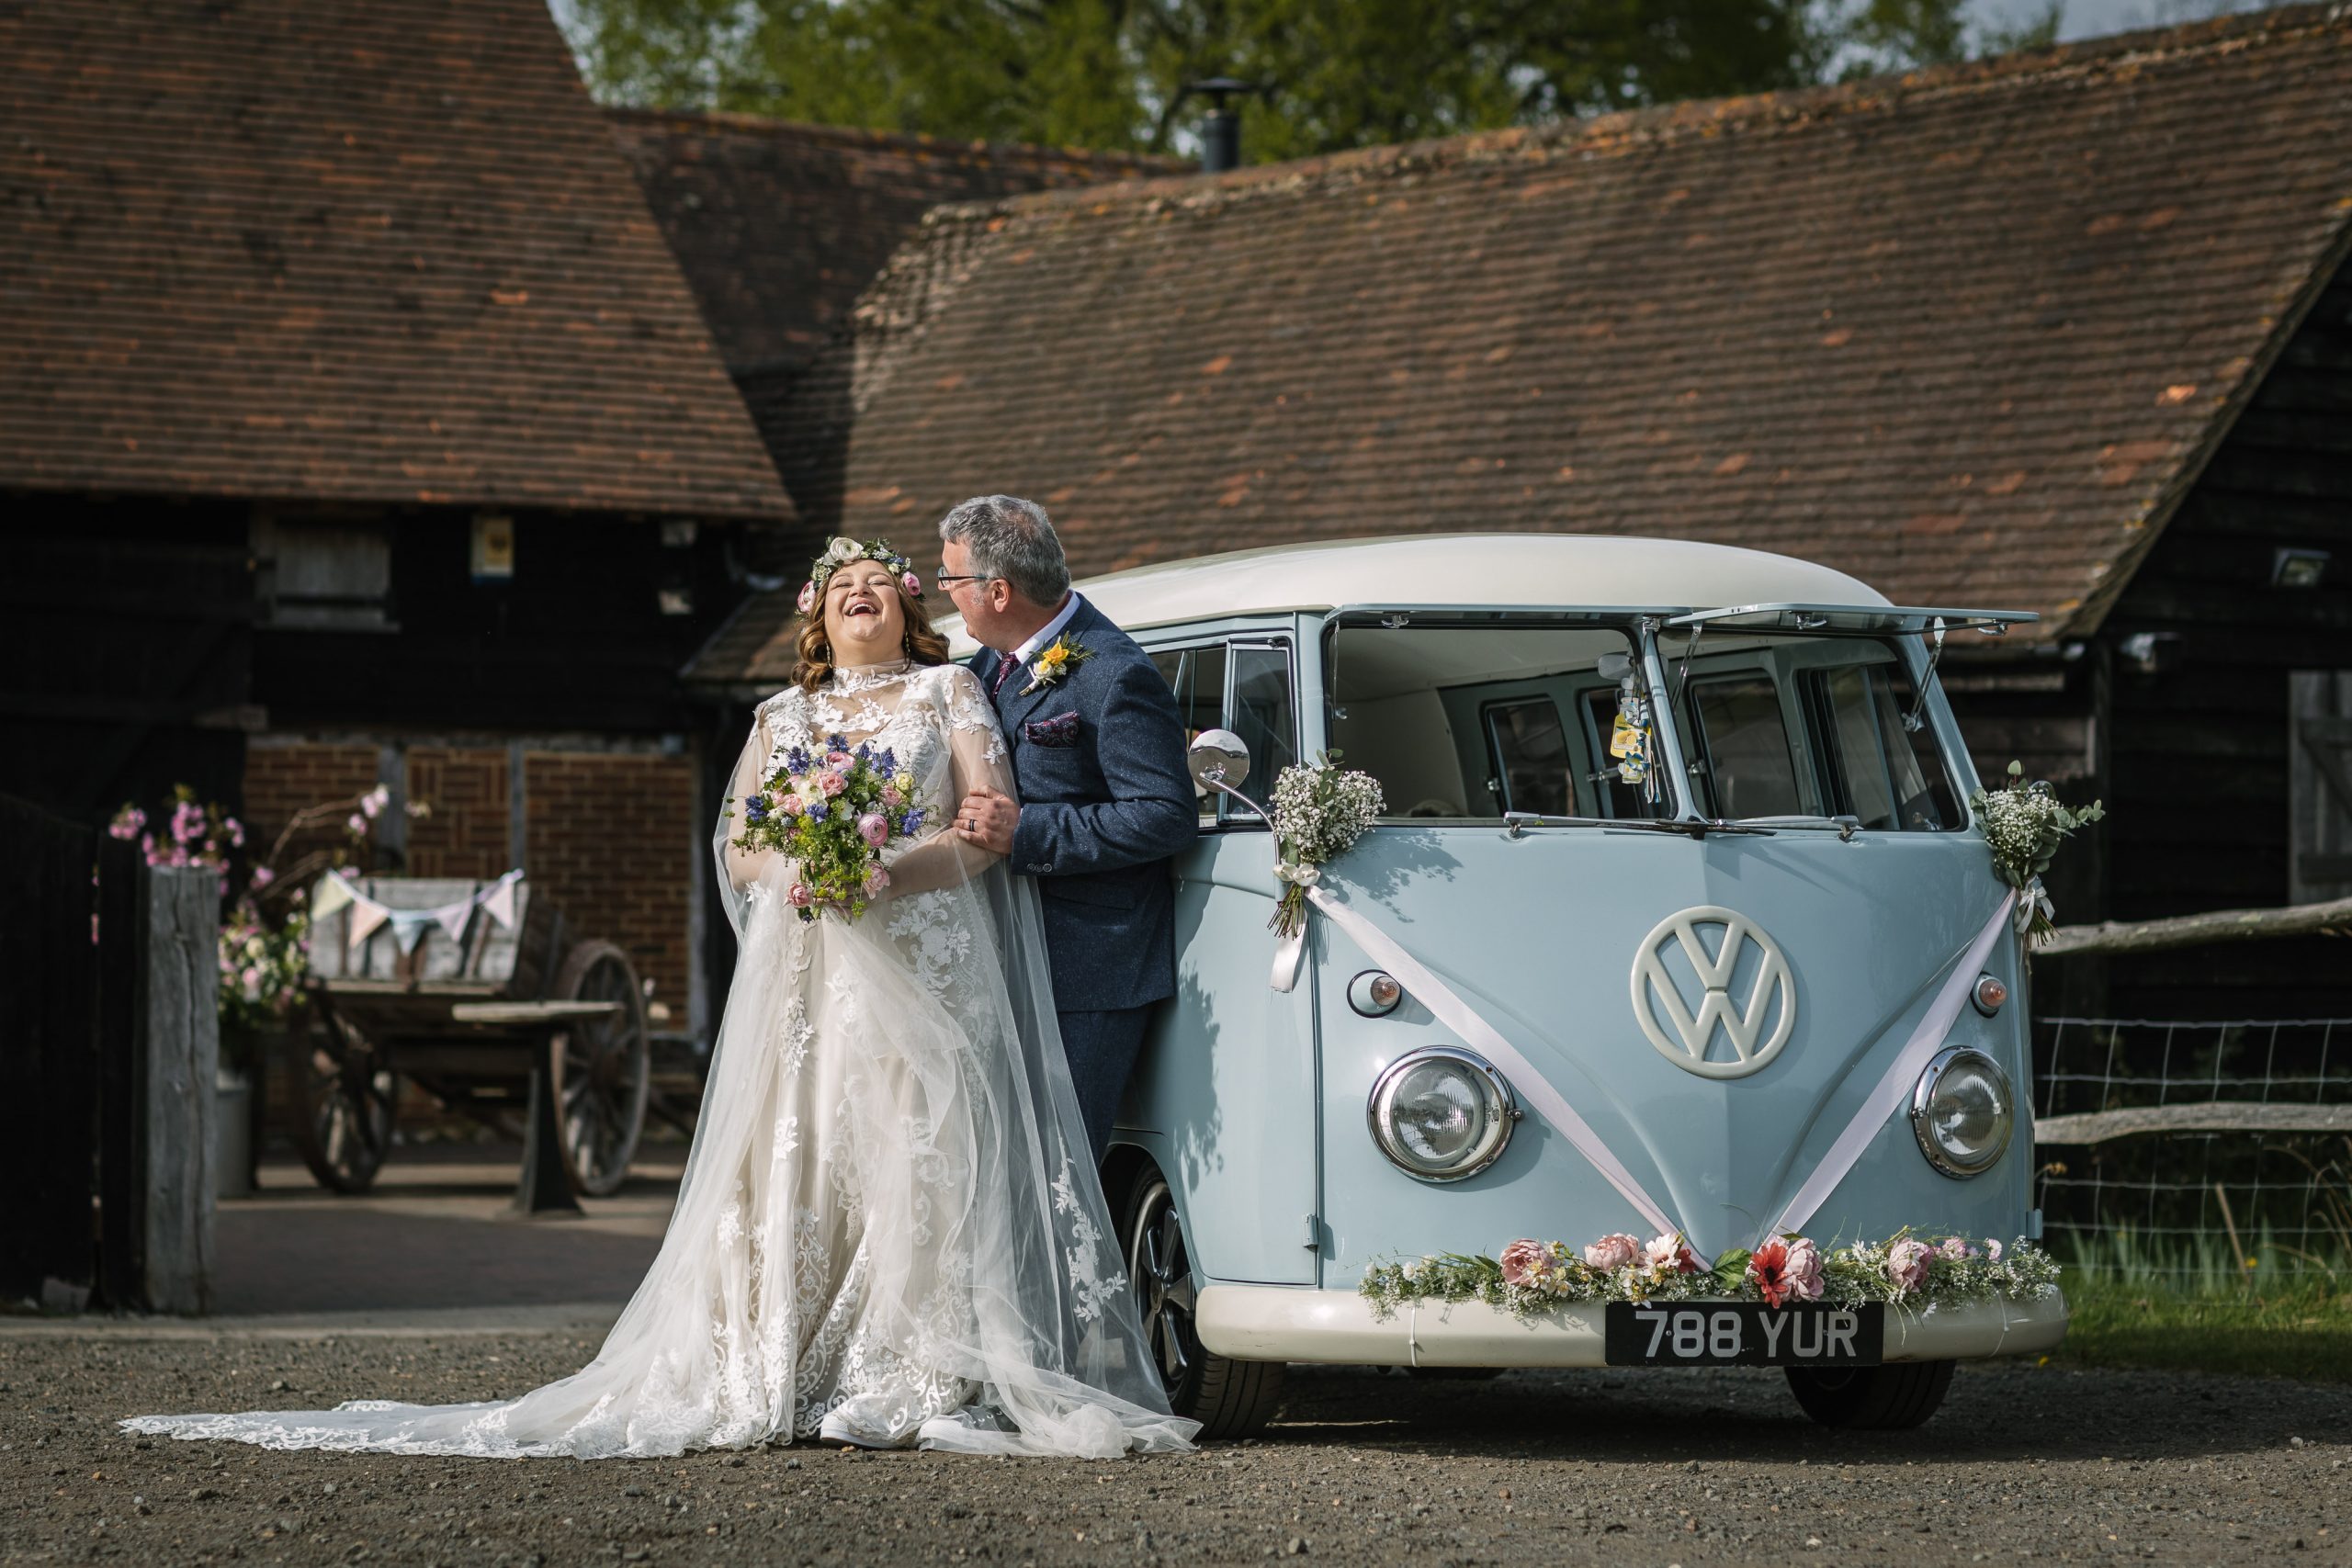 portret van bruid en bruidegom bij trouwauto volkswagen busje VW natuurlijke ongedwongen documentaire bruidsfotografie breda